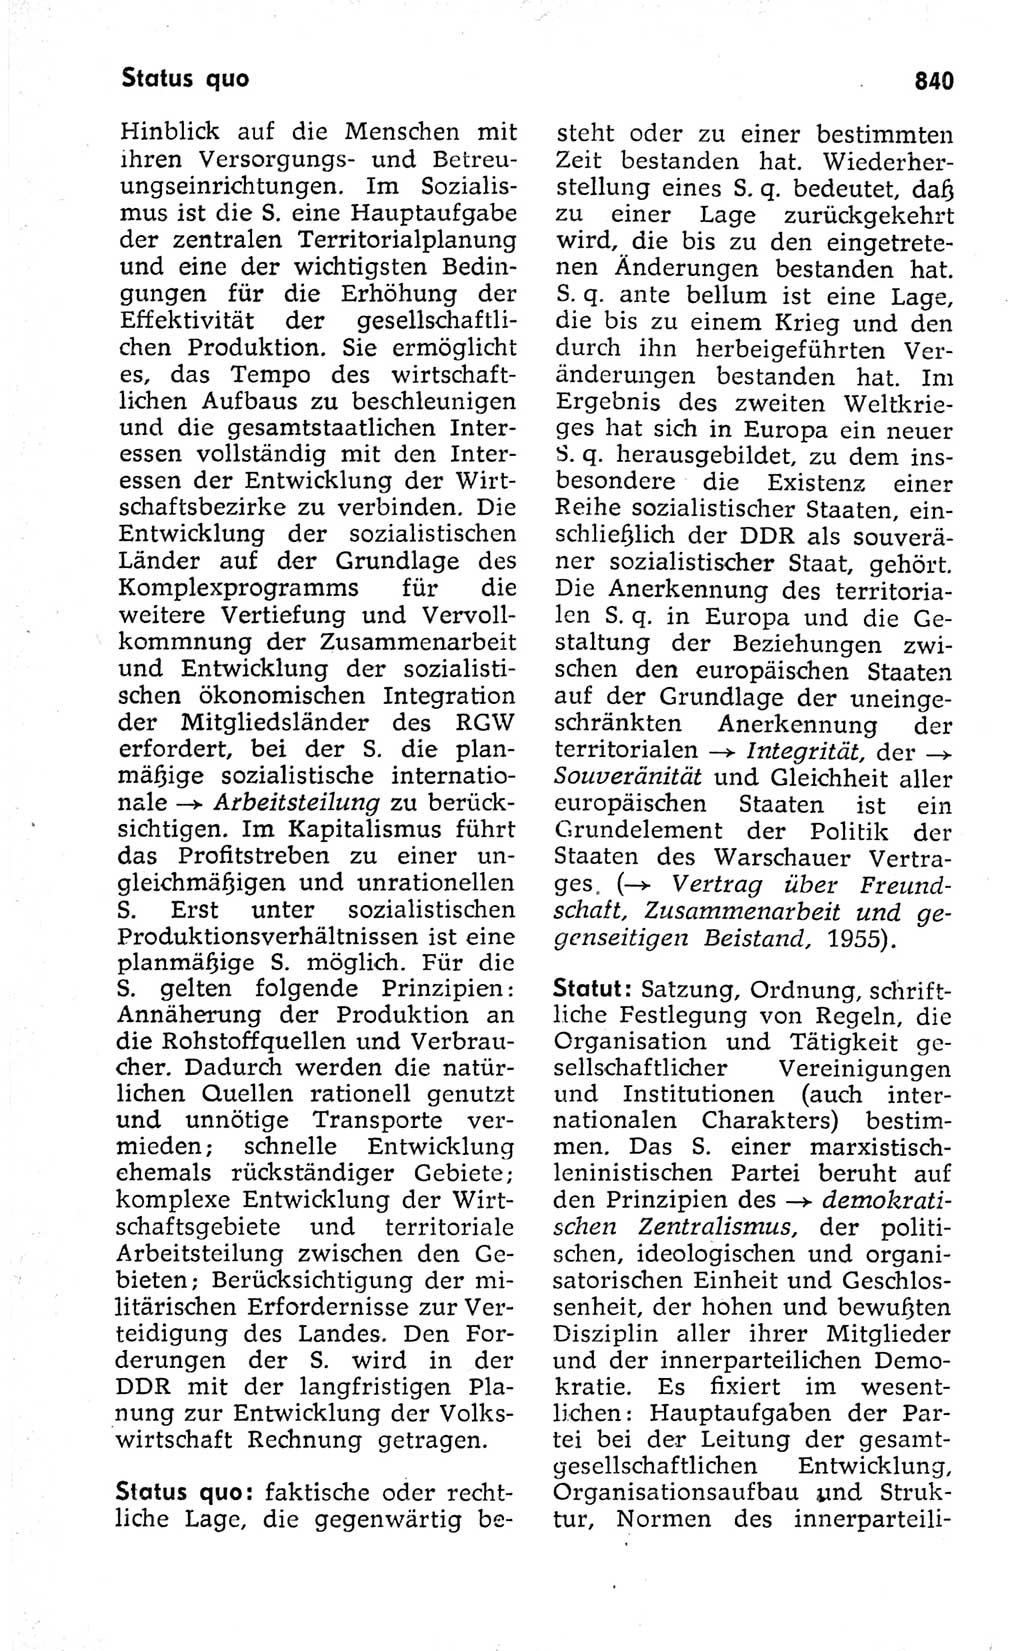 Kleines politisches Wörterbuch [Deutsche Demokratische Republik (DDR)] 1973, Seite 840 (Kl. pol. Wb. DDR 1973, S. 840)